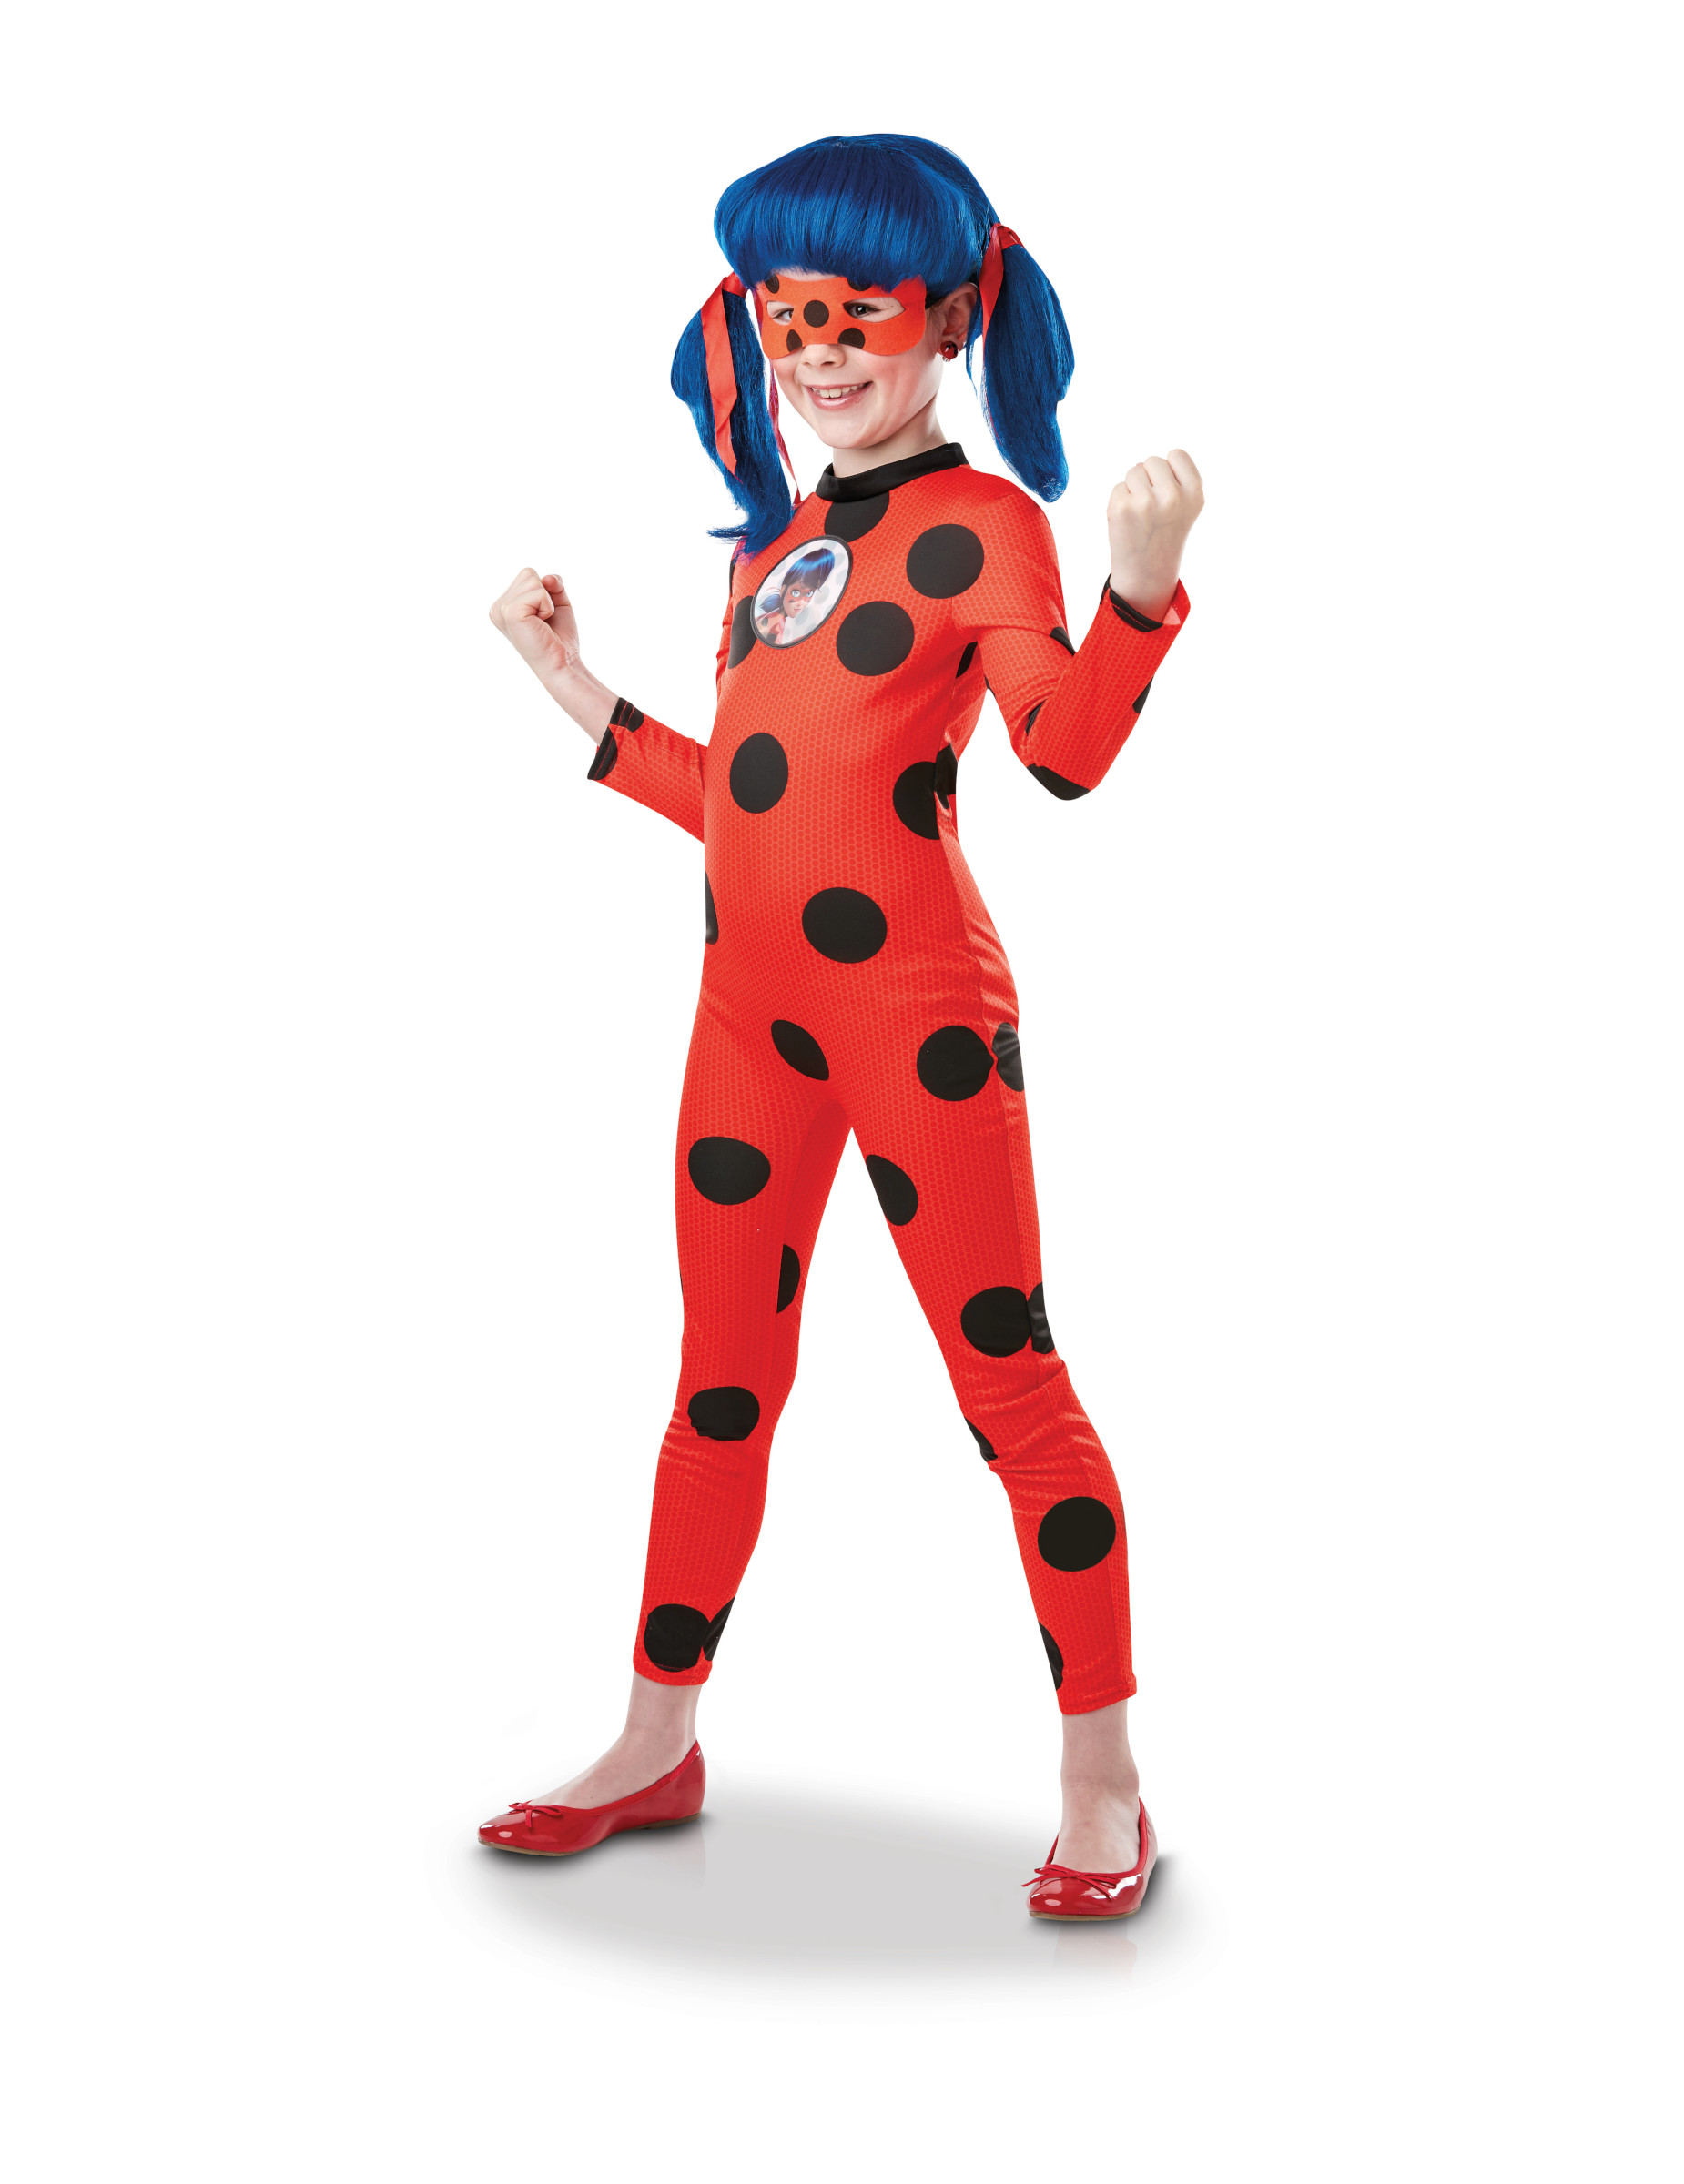 Déguisement miraculous ladybug femme – Déguisements cadeaux pas chers, Boutique Arlequin